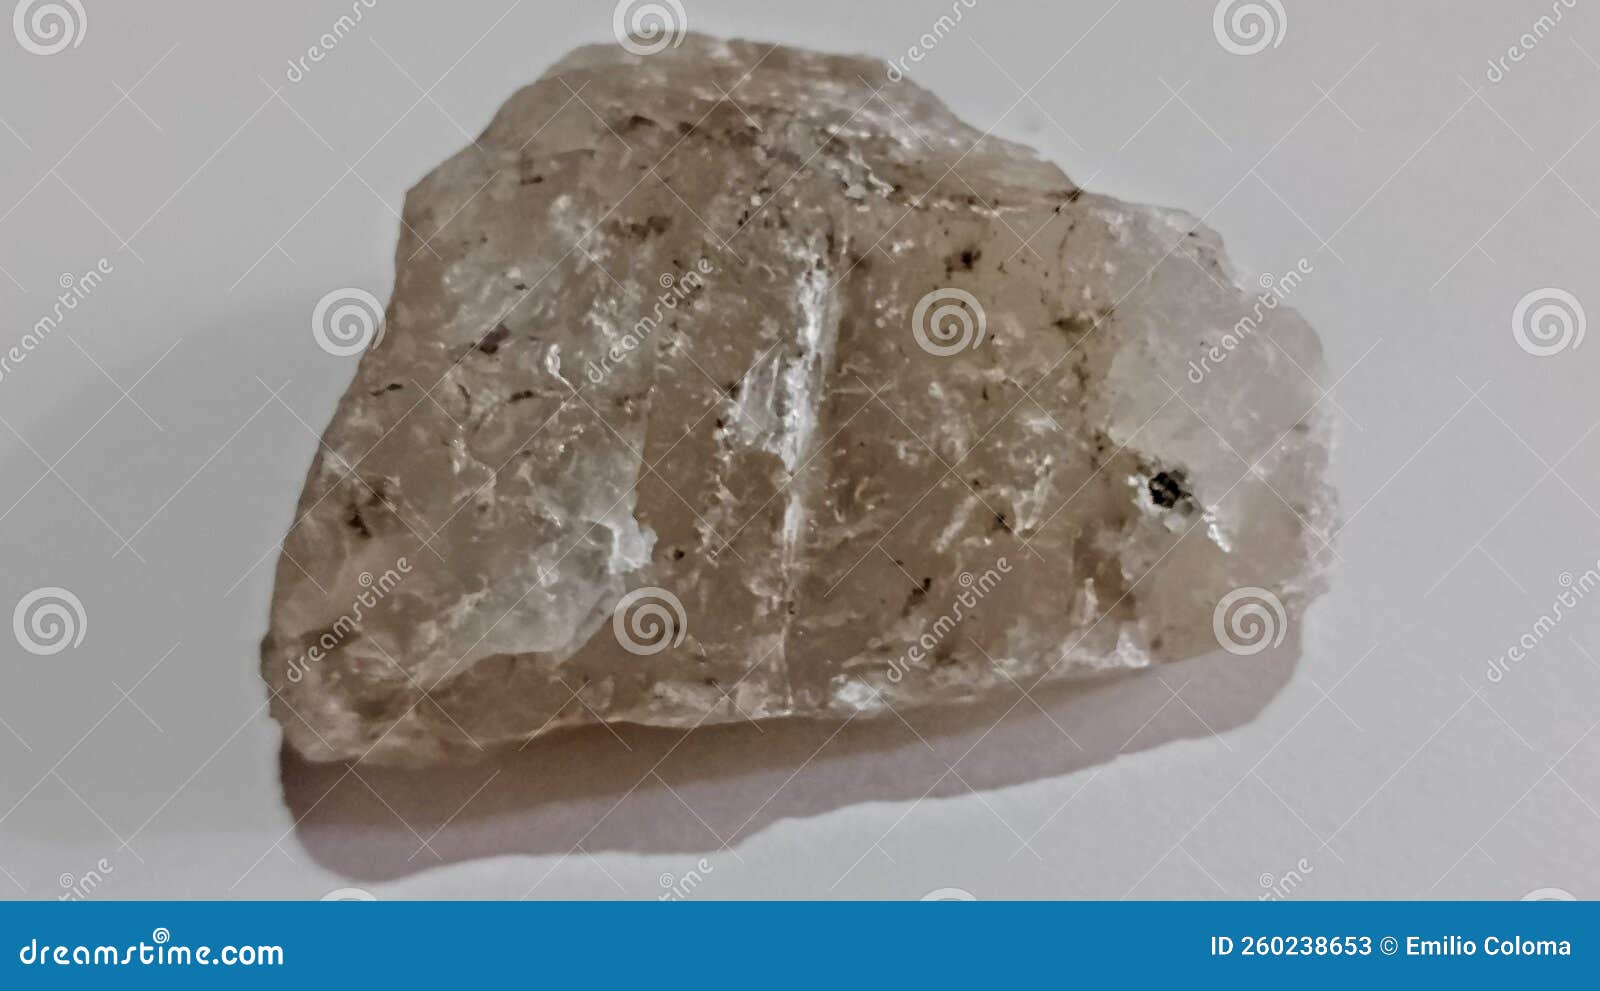 calcite stone in a white background